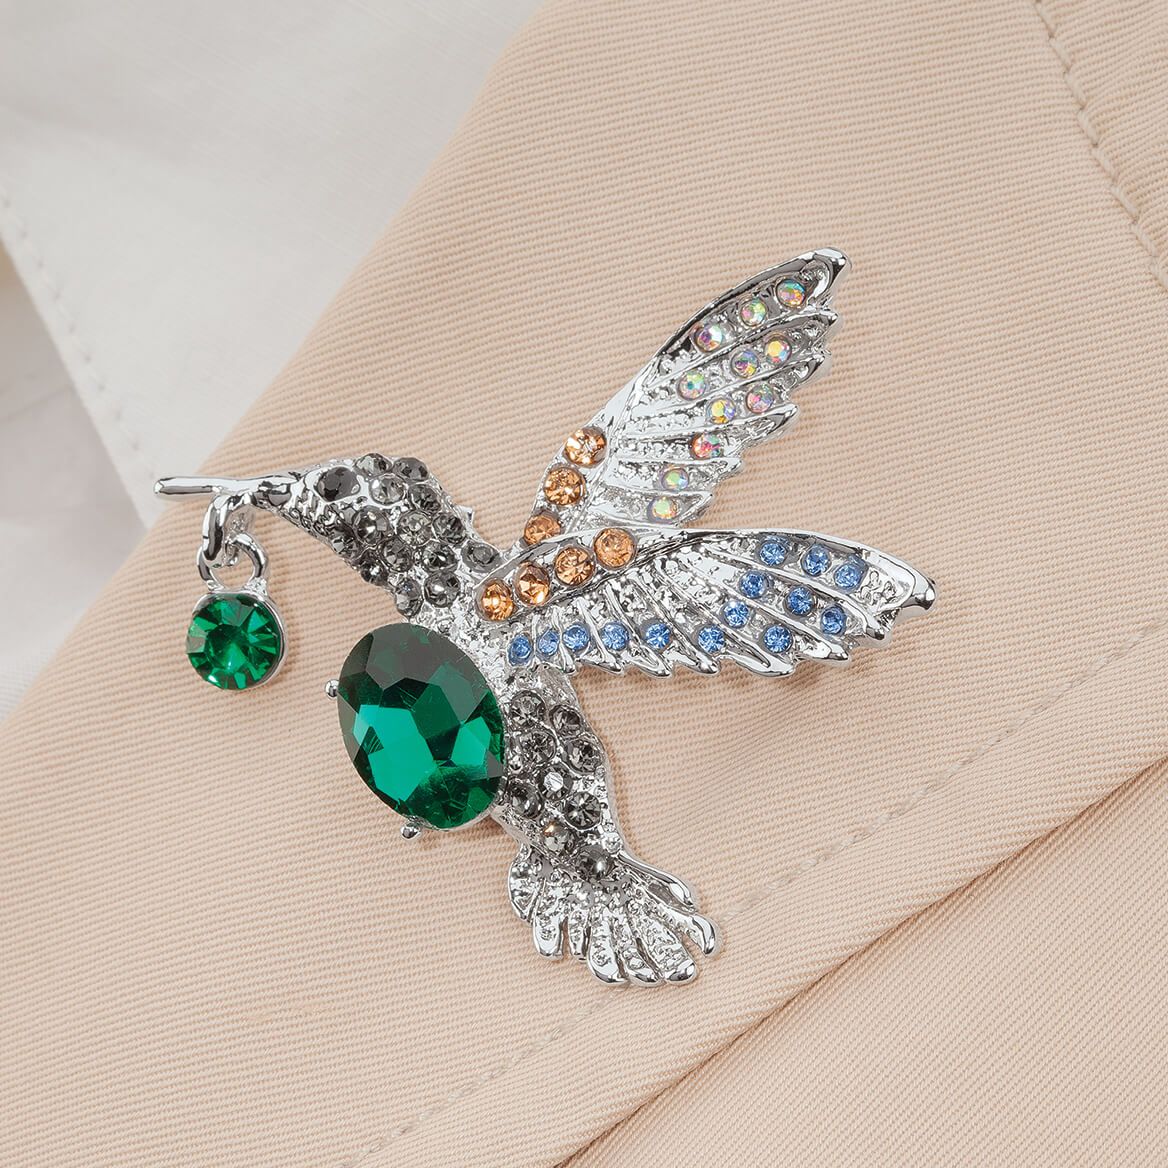 Hummingbird Brooch Pin + '-' + 377080